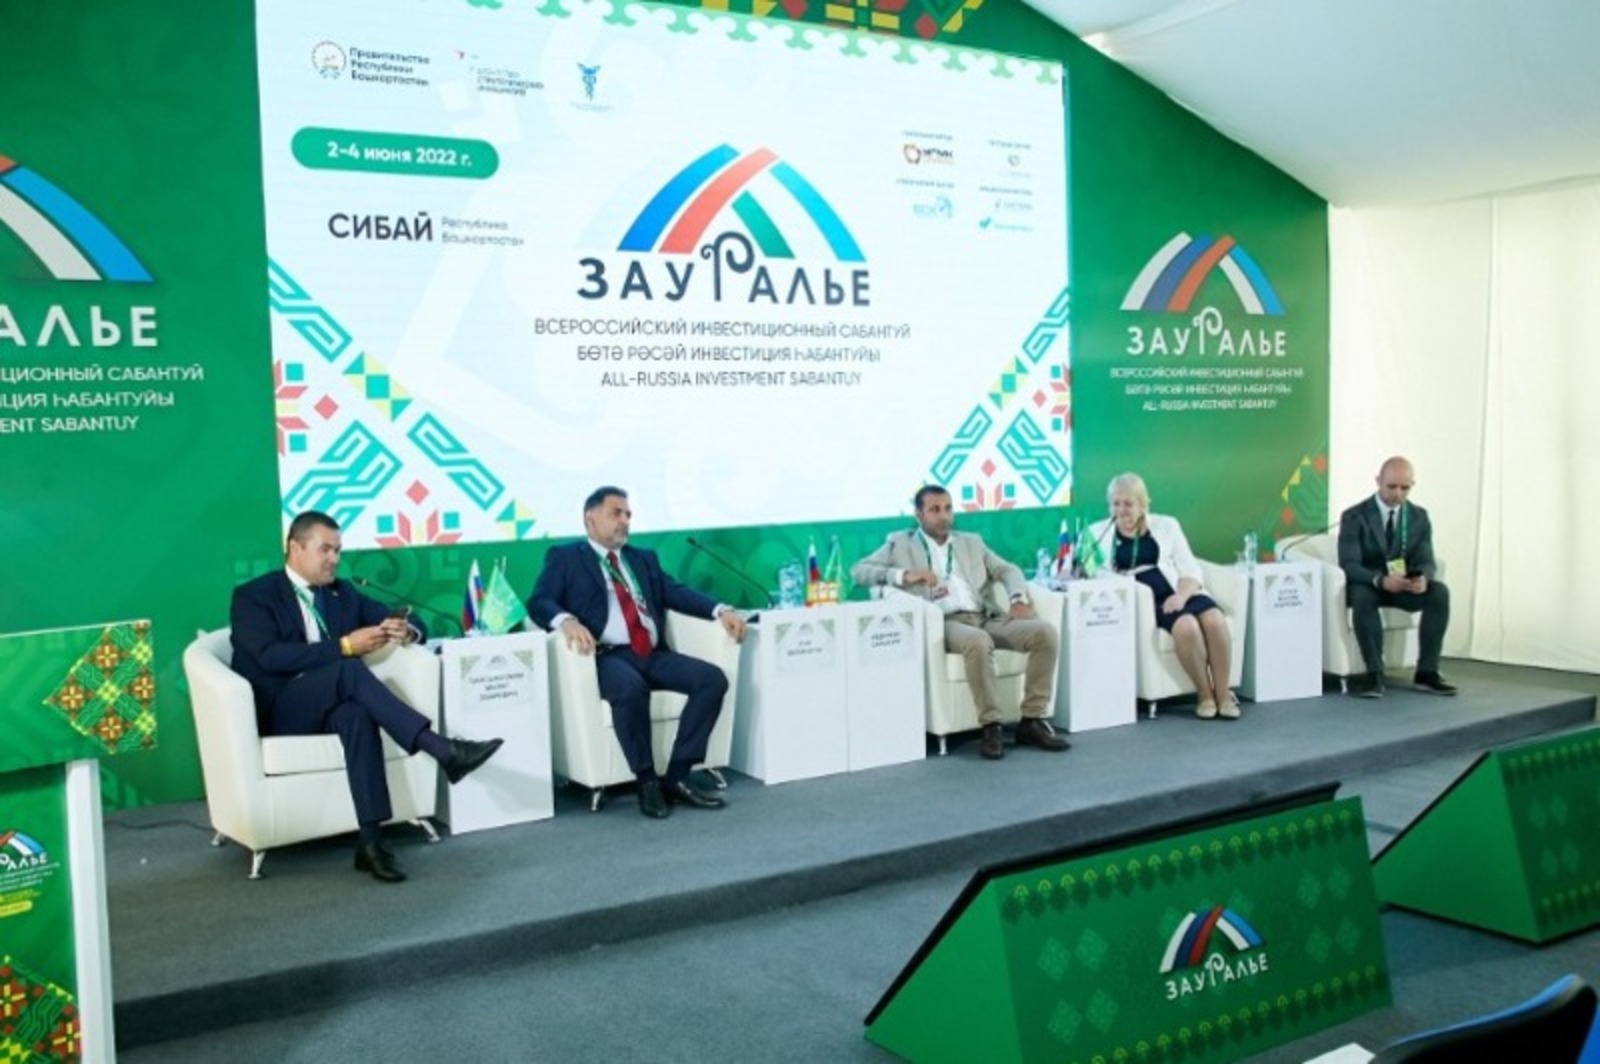 Потенциал развития Башкортостана и Турецкой Республики обсудили в рамках всероссийского инвестиционного сабантуя «Зауралье-2022» в Сибае